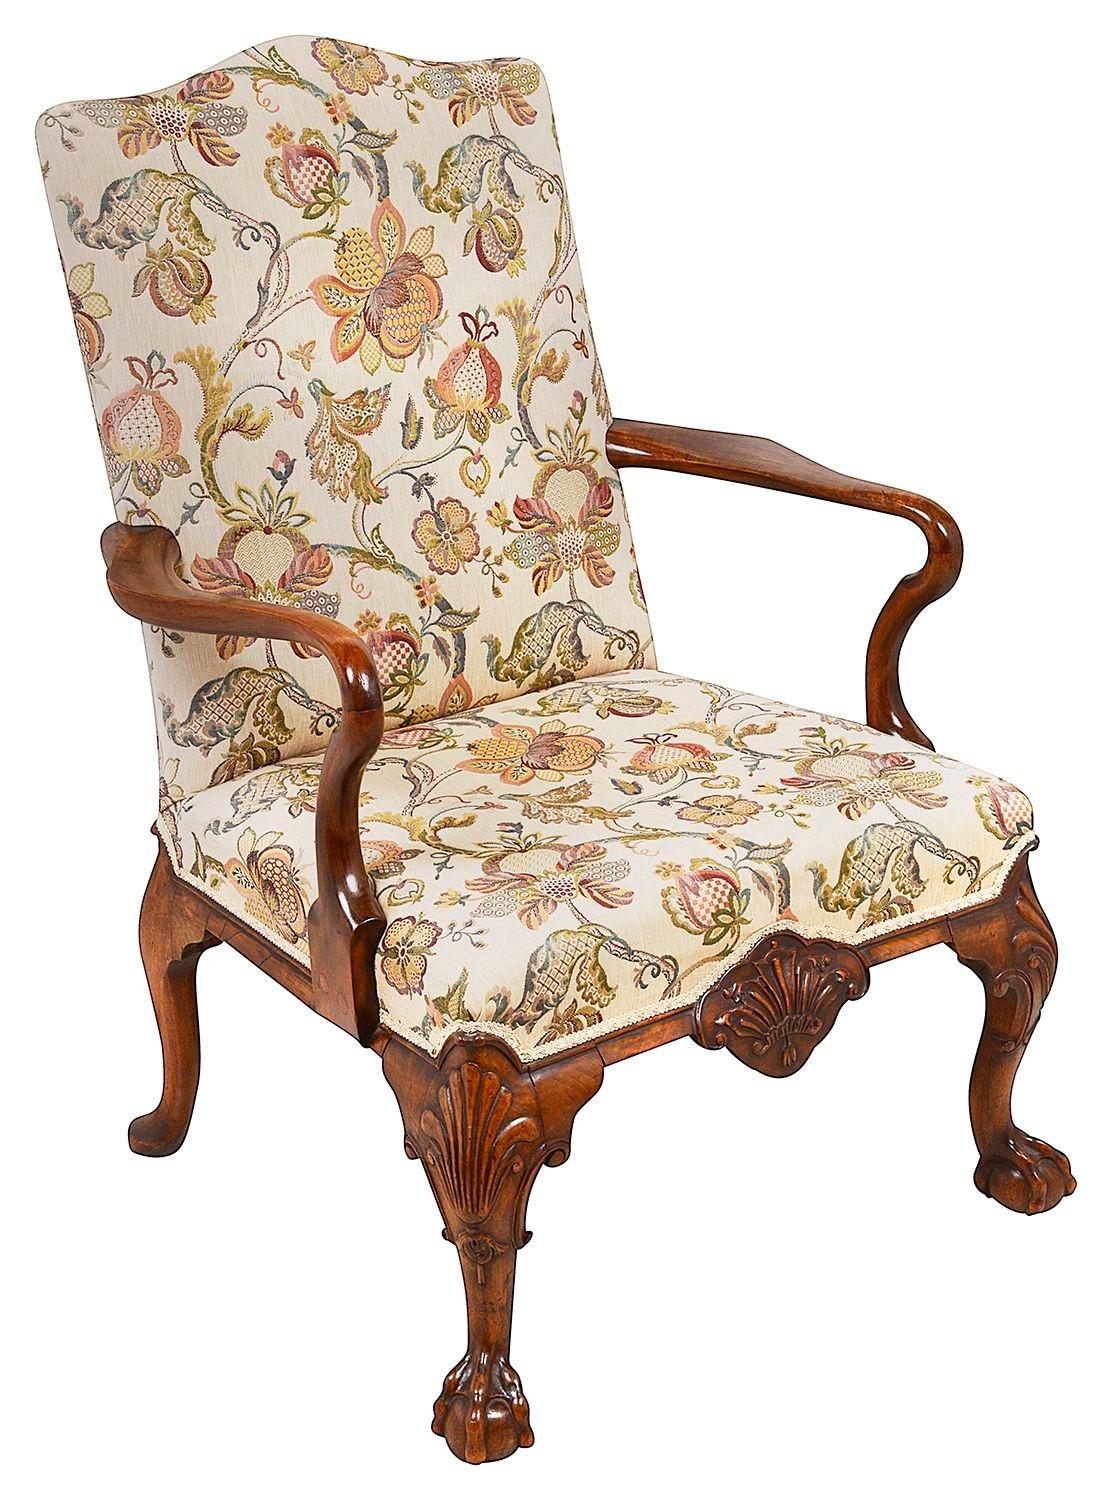 Une paire de fauteuils de style Queen Anne en noyer de très bonne qualité, chacun avec un dossier rembourré et des sièges rembourrés, des accoudoirs en forme de crochet Shepard, reposant sur de magnifiques pieds cabriole sculptés à la main.  La